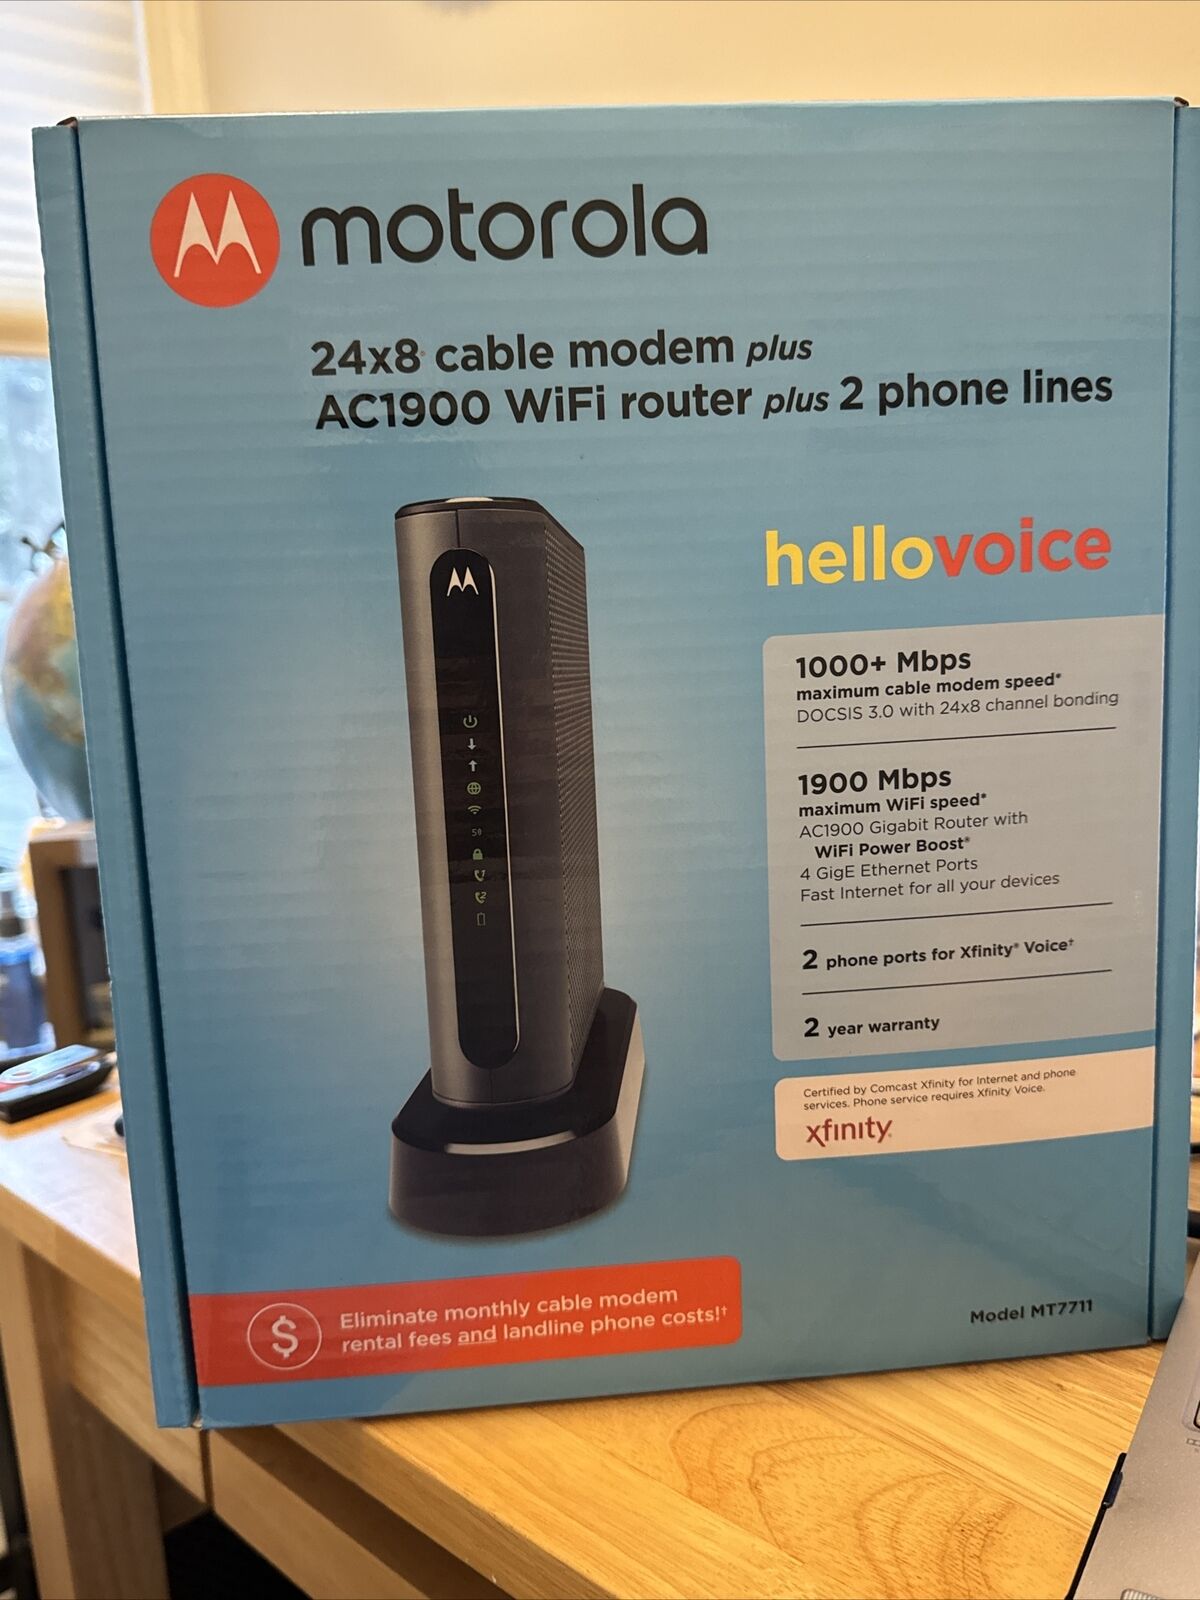 Motorola 24x8 Dual Modem Plus AC1900 Router With Voice, Model MT7711. Open Box